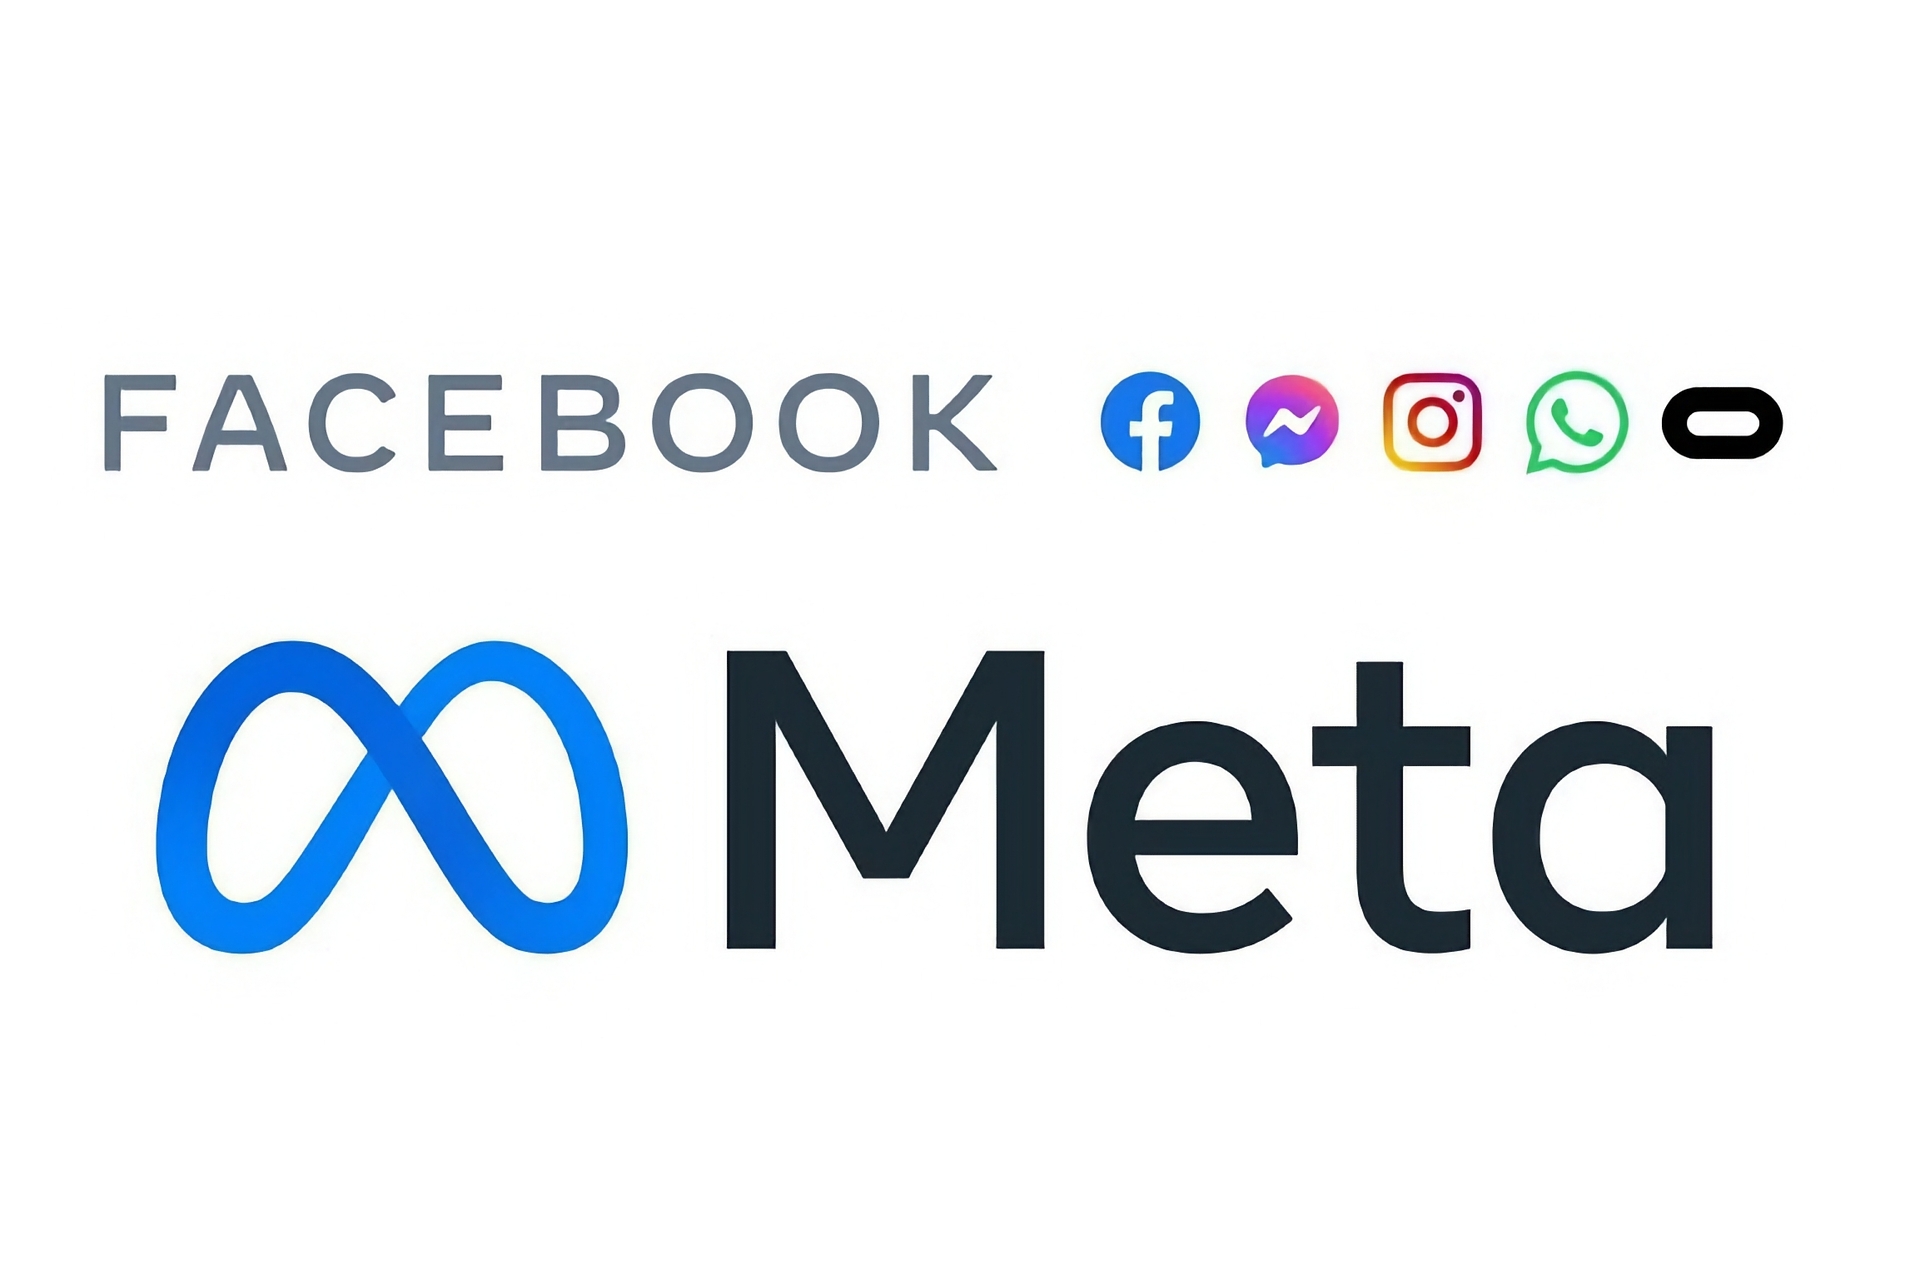 Facebook: Facebook'un ve Messenger, Instagram, WhatsApp ve Oculus gibi dünya çapında diğer büyük sosyal medya veya dijital hizmetlerin sahibi olan Meta'nın resmi logosu